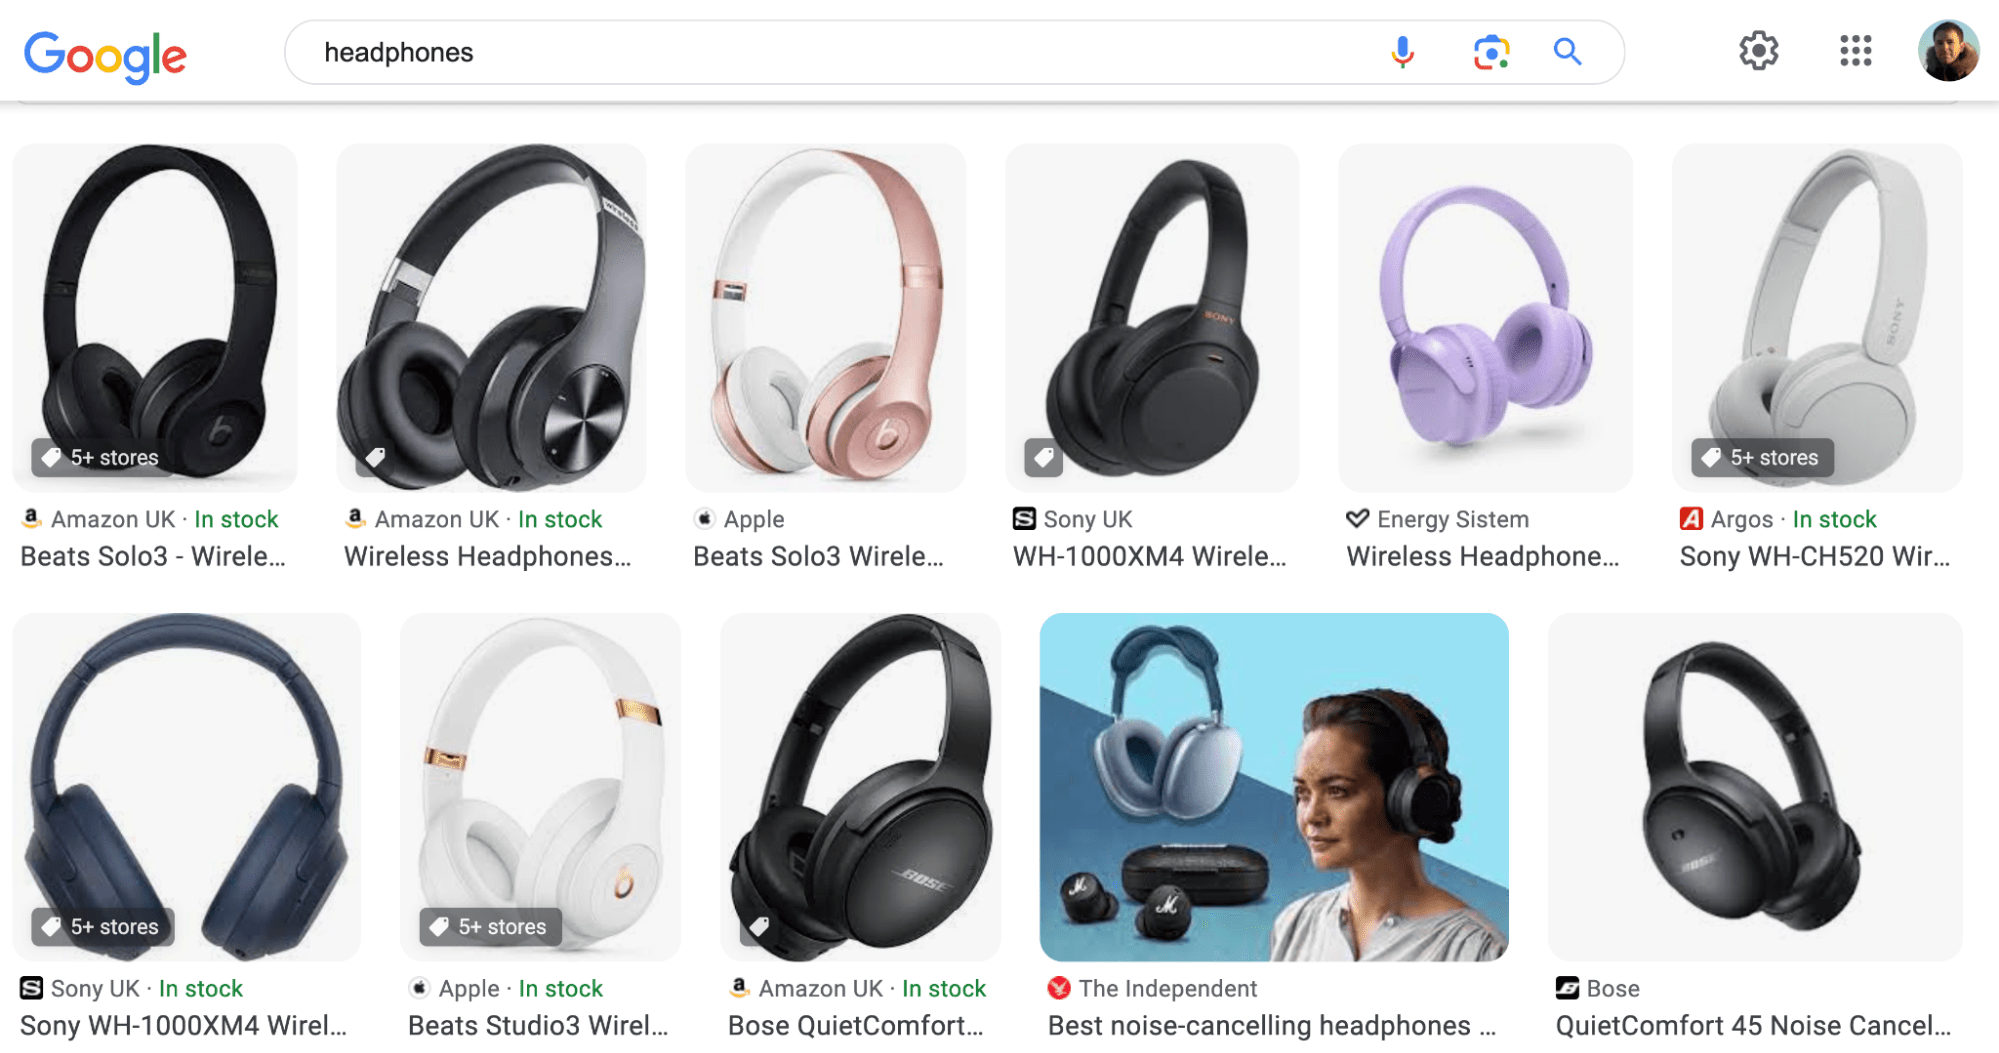 Kulaklık SERP'si, Google Görseller aracılığıyla